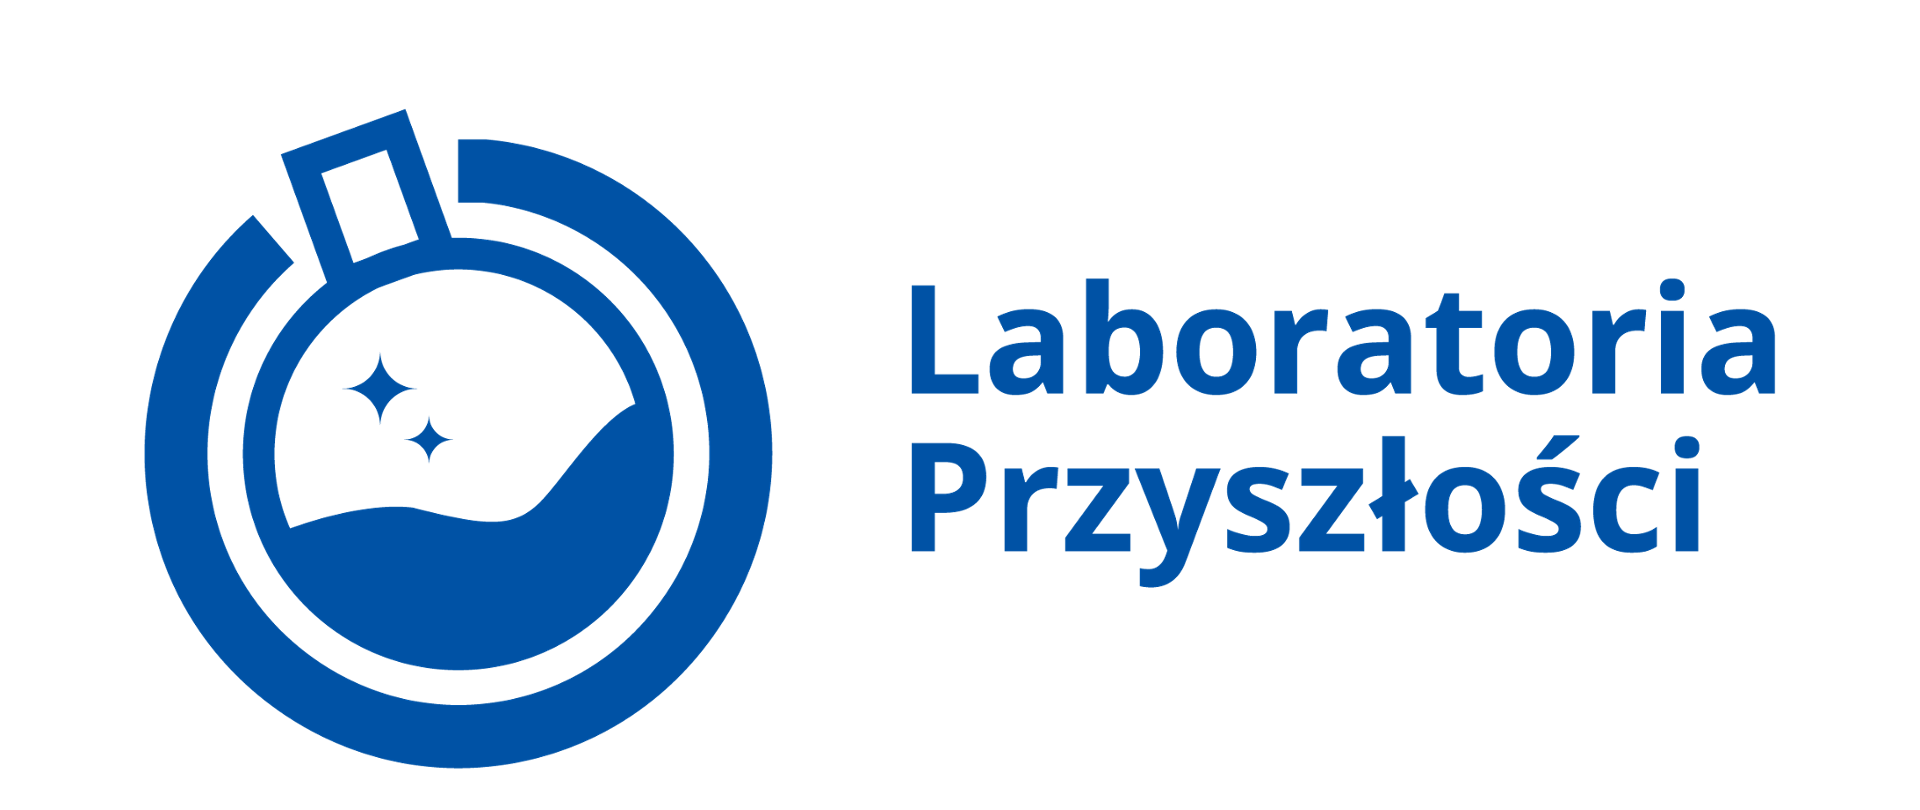 Laboratoria przyszłości niebieskie logo programu w poziomie 